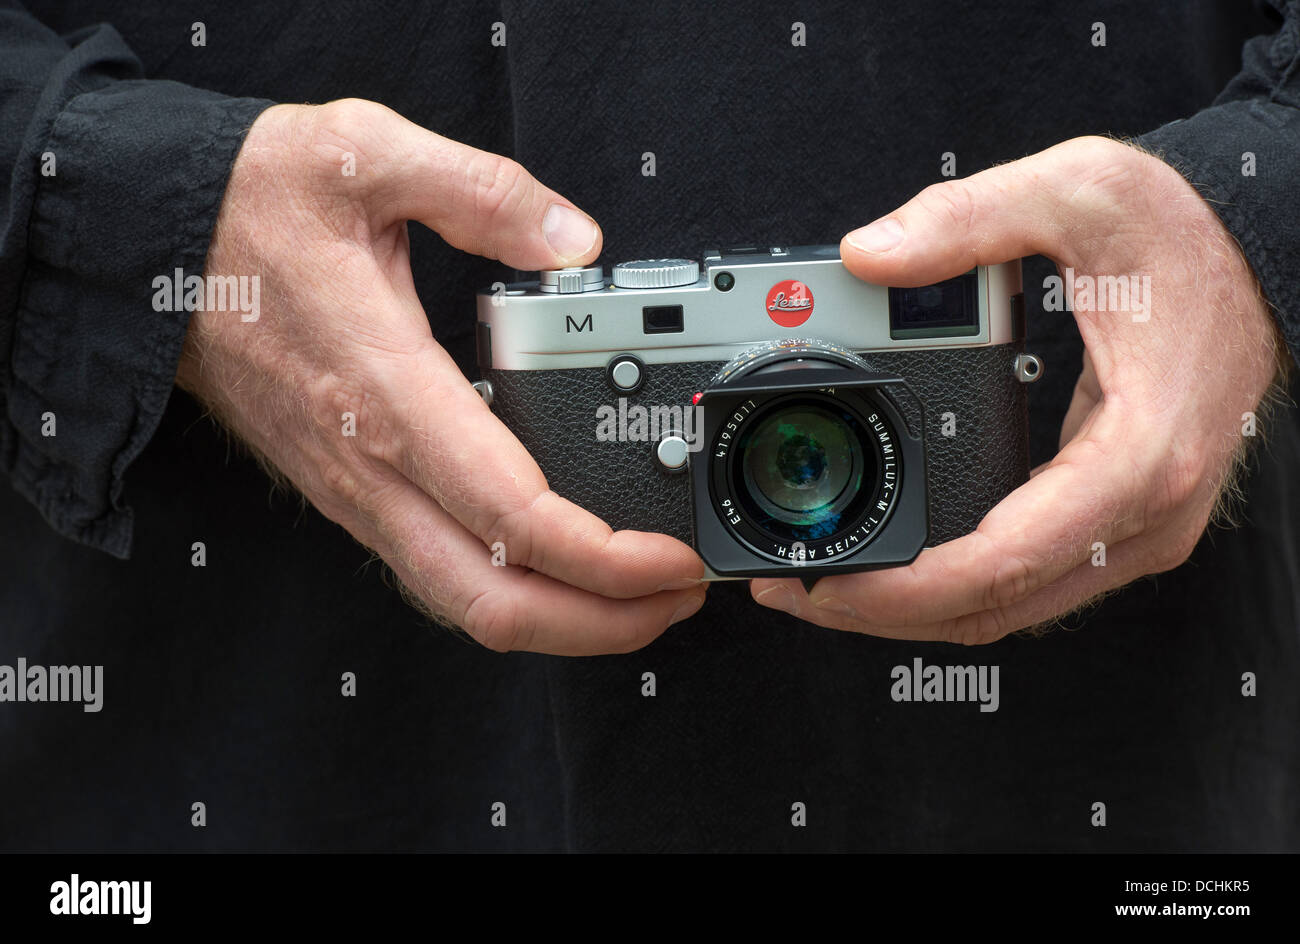 Fotografen Hände halten Messsucherkamera Leica M 240 Stockfoto